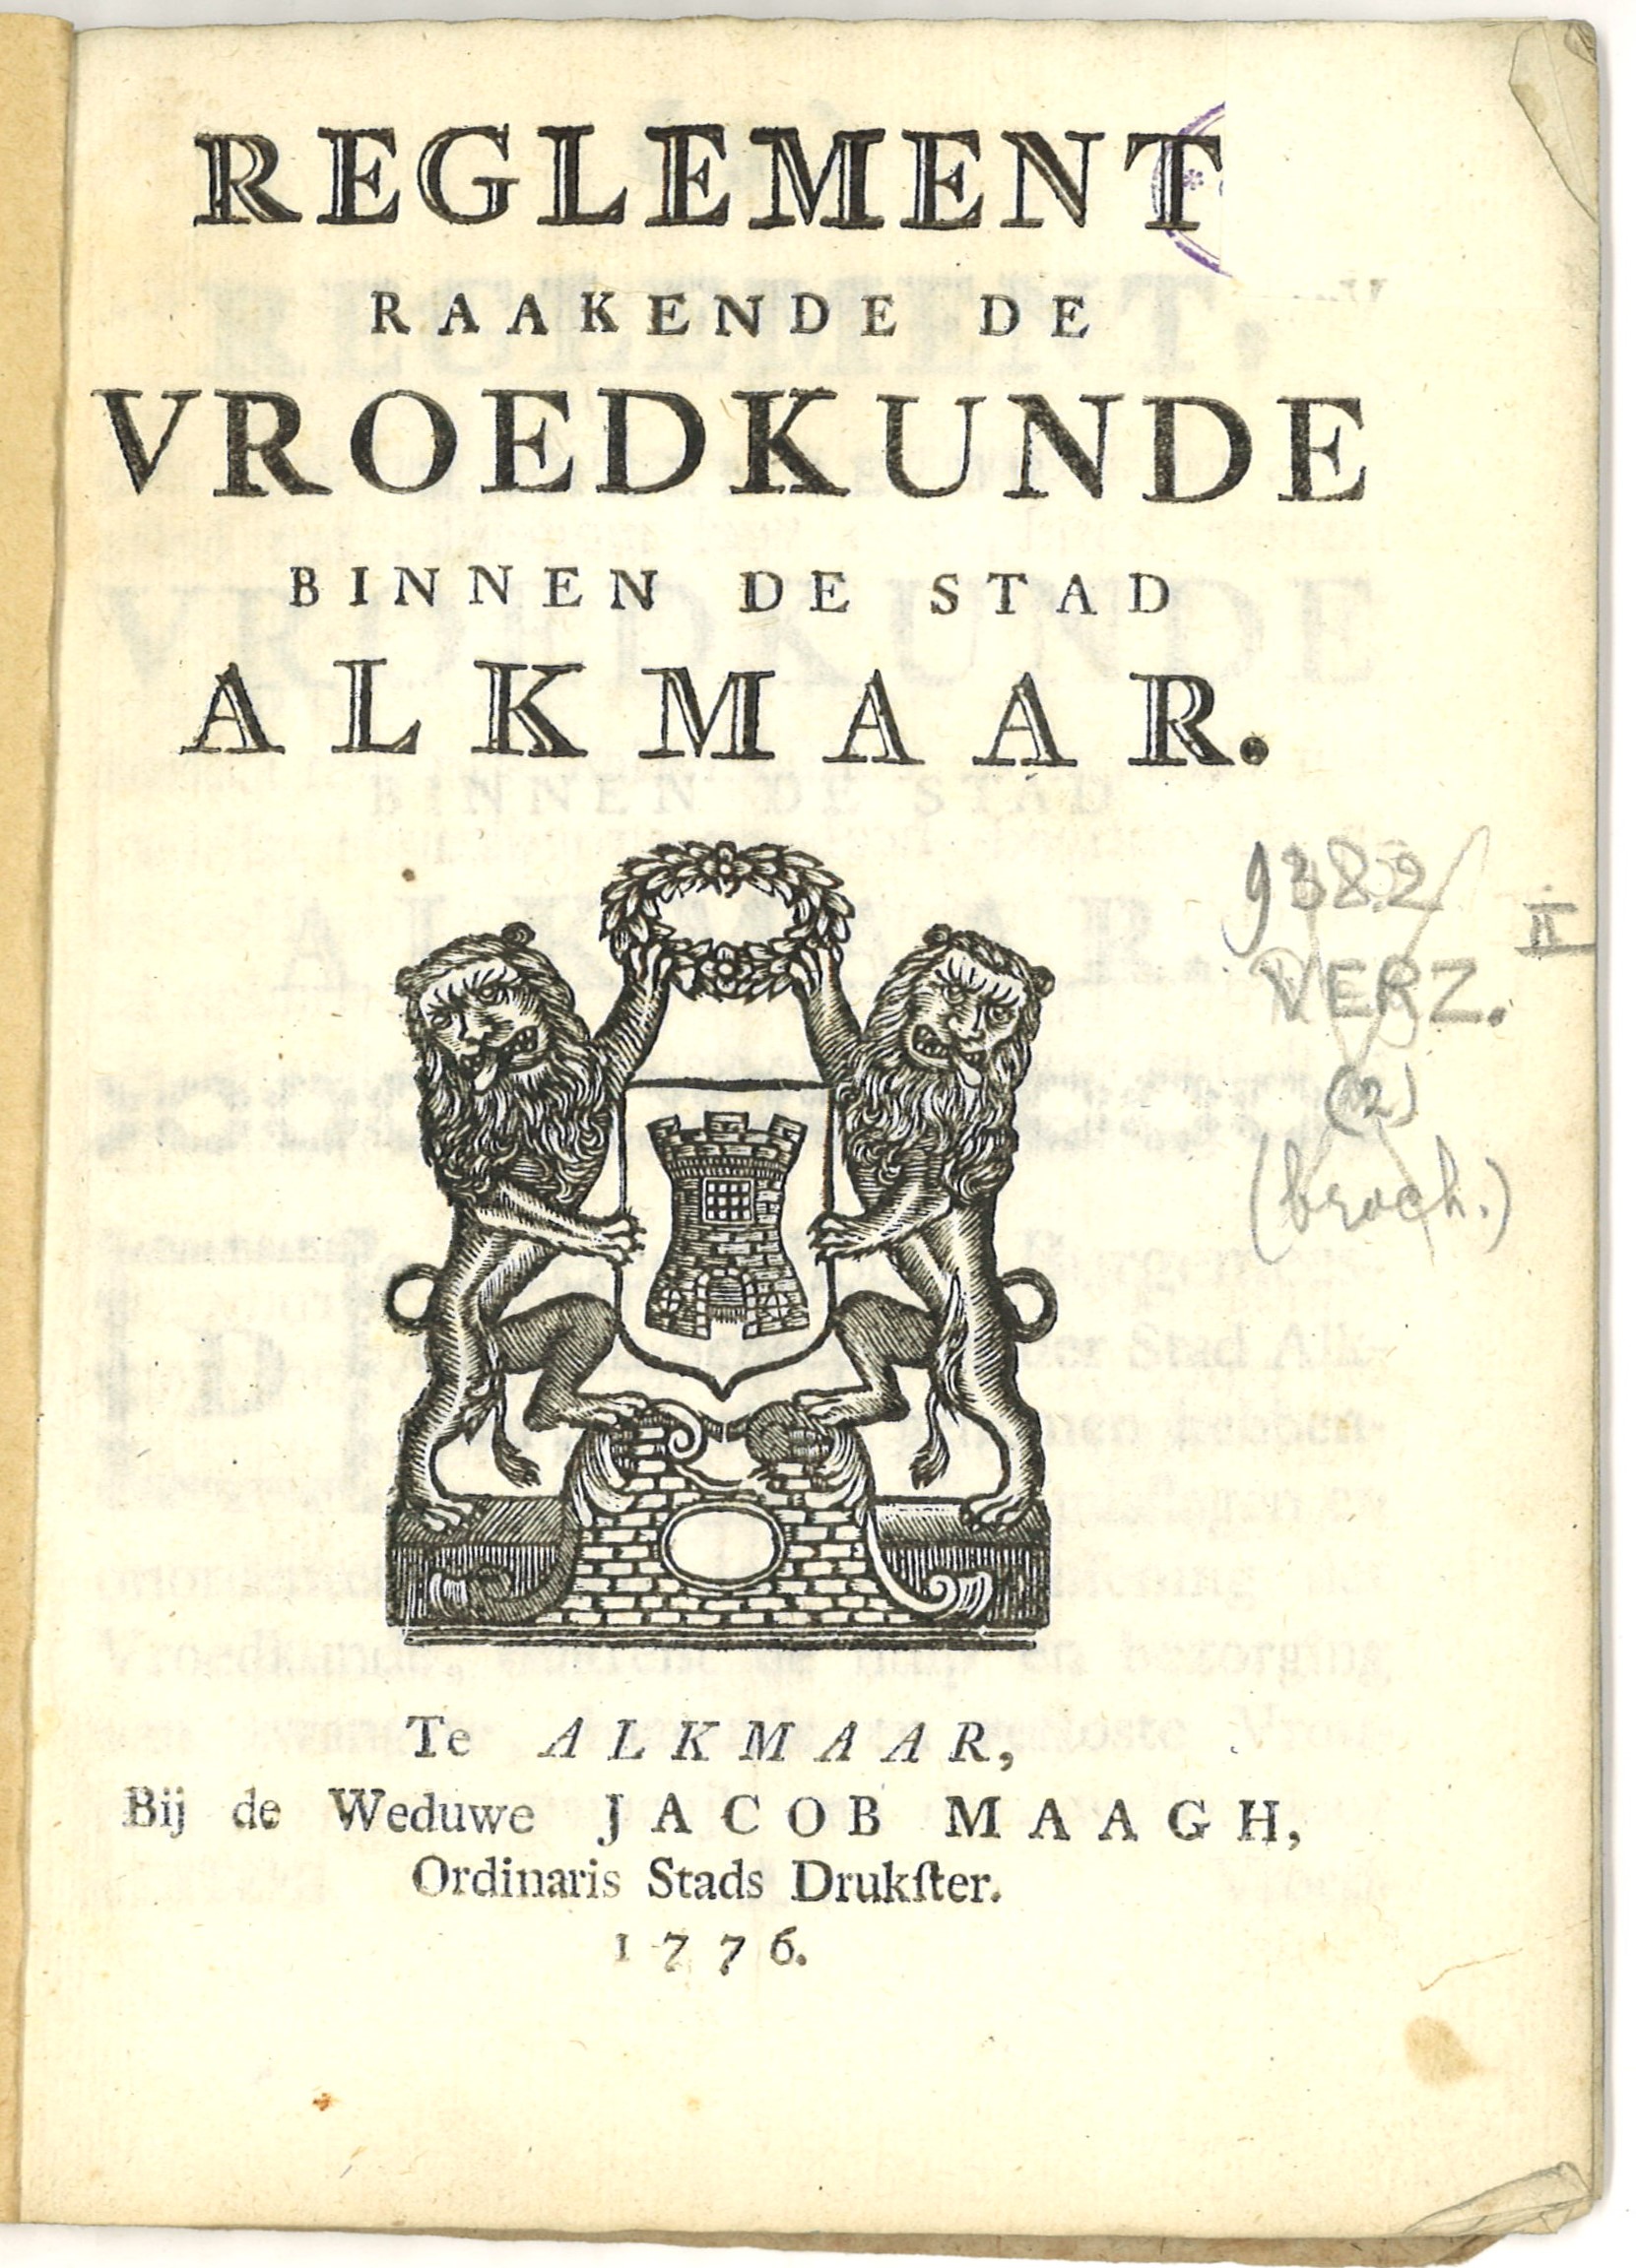 Reglement vroedkunde Alkmaar 1776